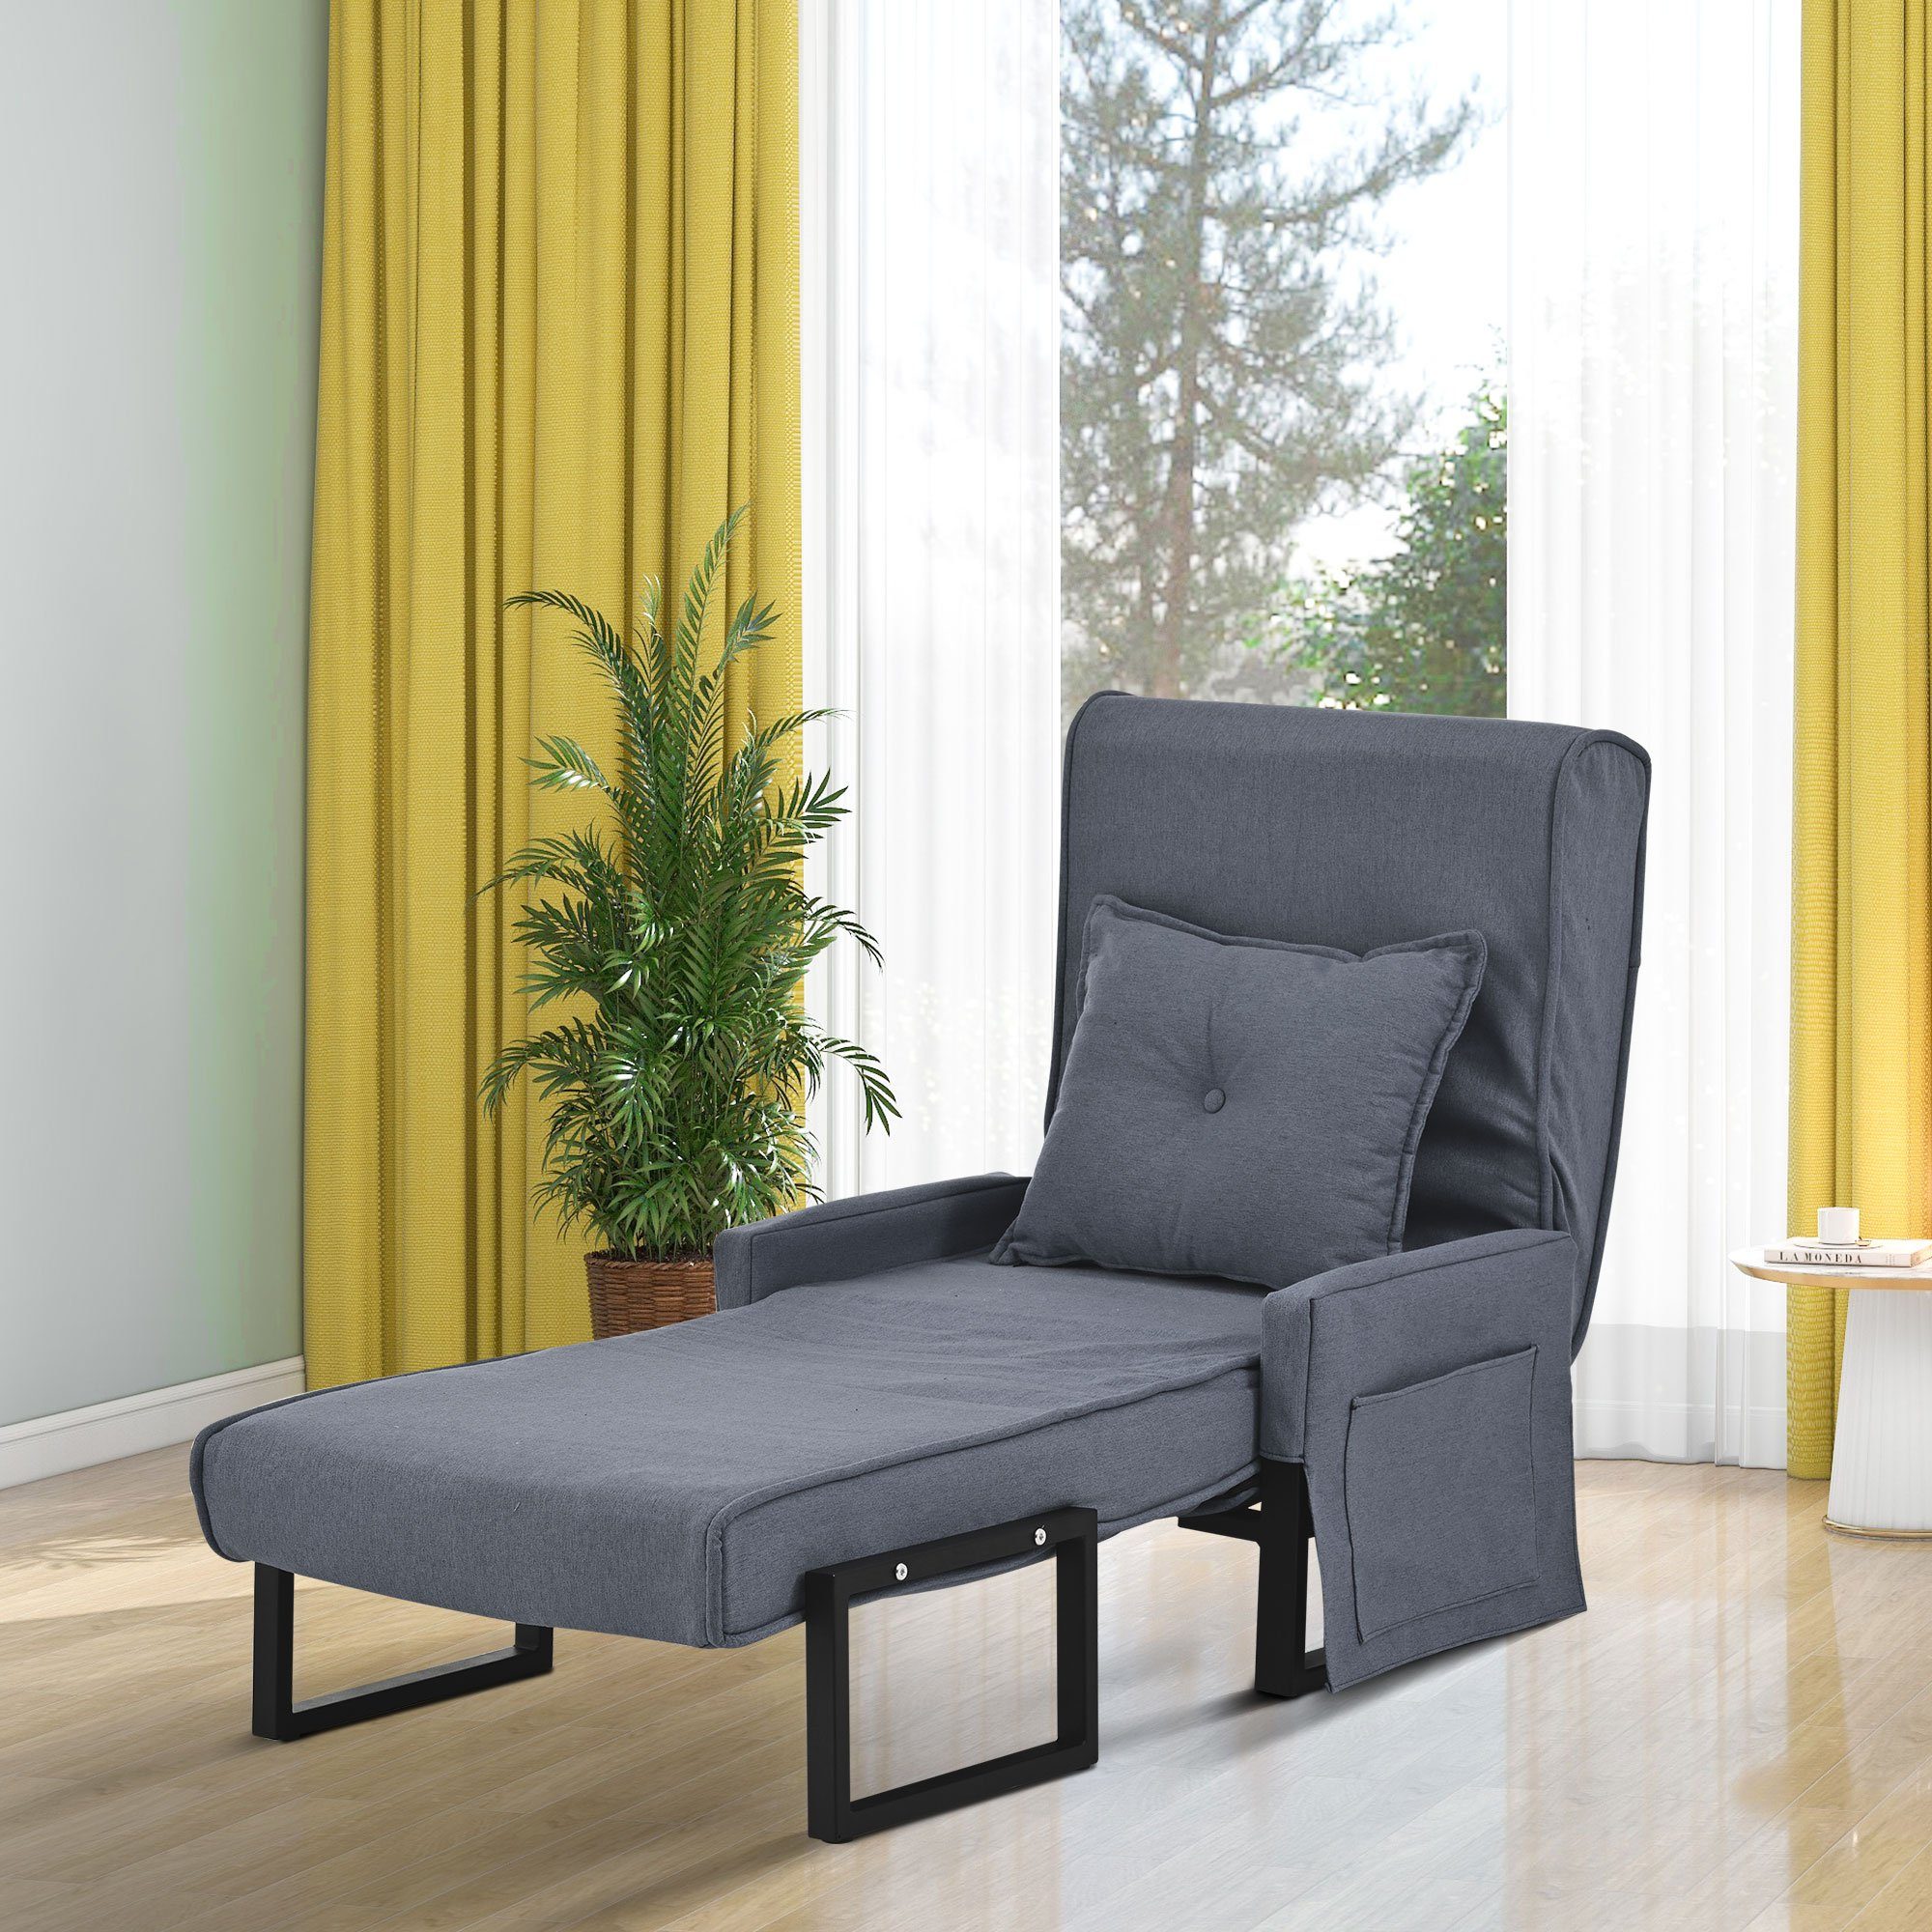 Merax Relaxsessel 3-in-1 faltbar mit Leinenbezug und Metallrahmen, Schlafsessel, Liegesessel mit 6 Fach vestellbarer Rücklehne, Relaxliege umwandelbar Grau | Sessel